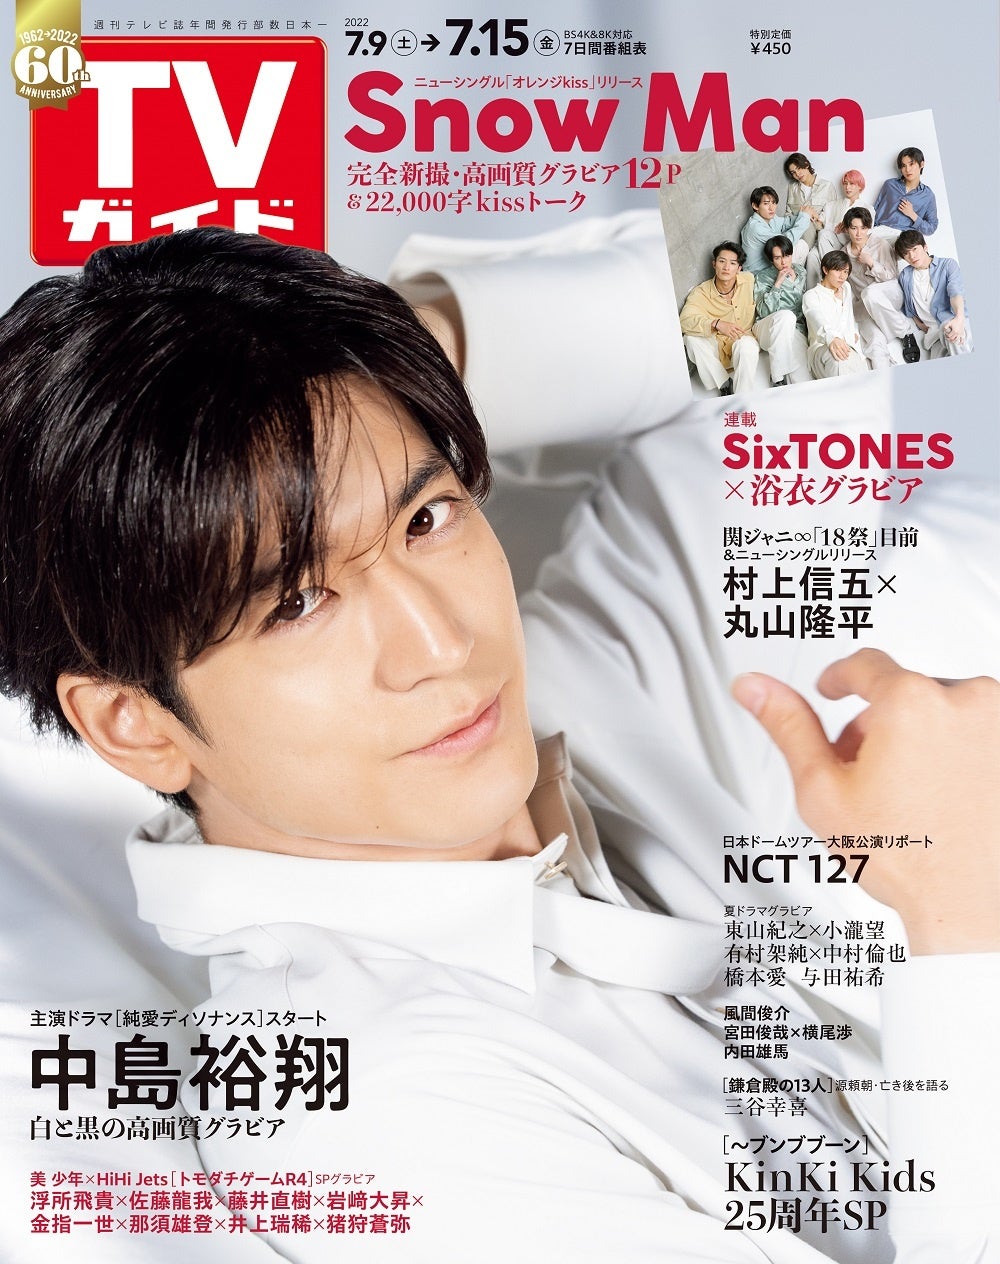 中島裕翔が表紙を飾る「TVガイド2022年7/15号」に、TVガイド創刊60周年記念ロゴが初登場！ Snow Manの12Pプレミアムグラビアも